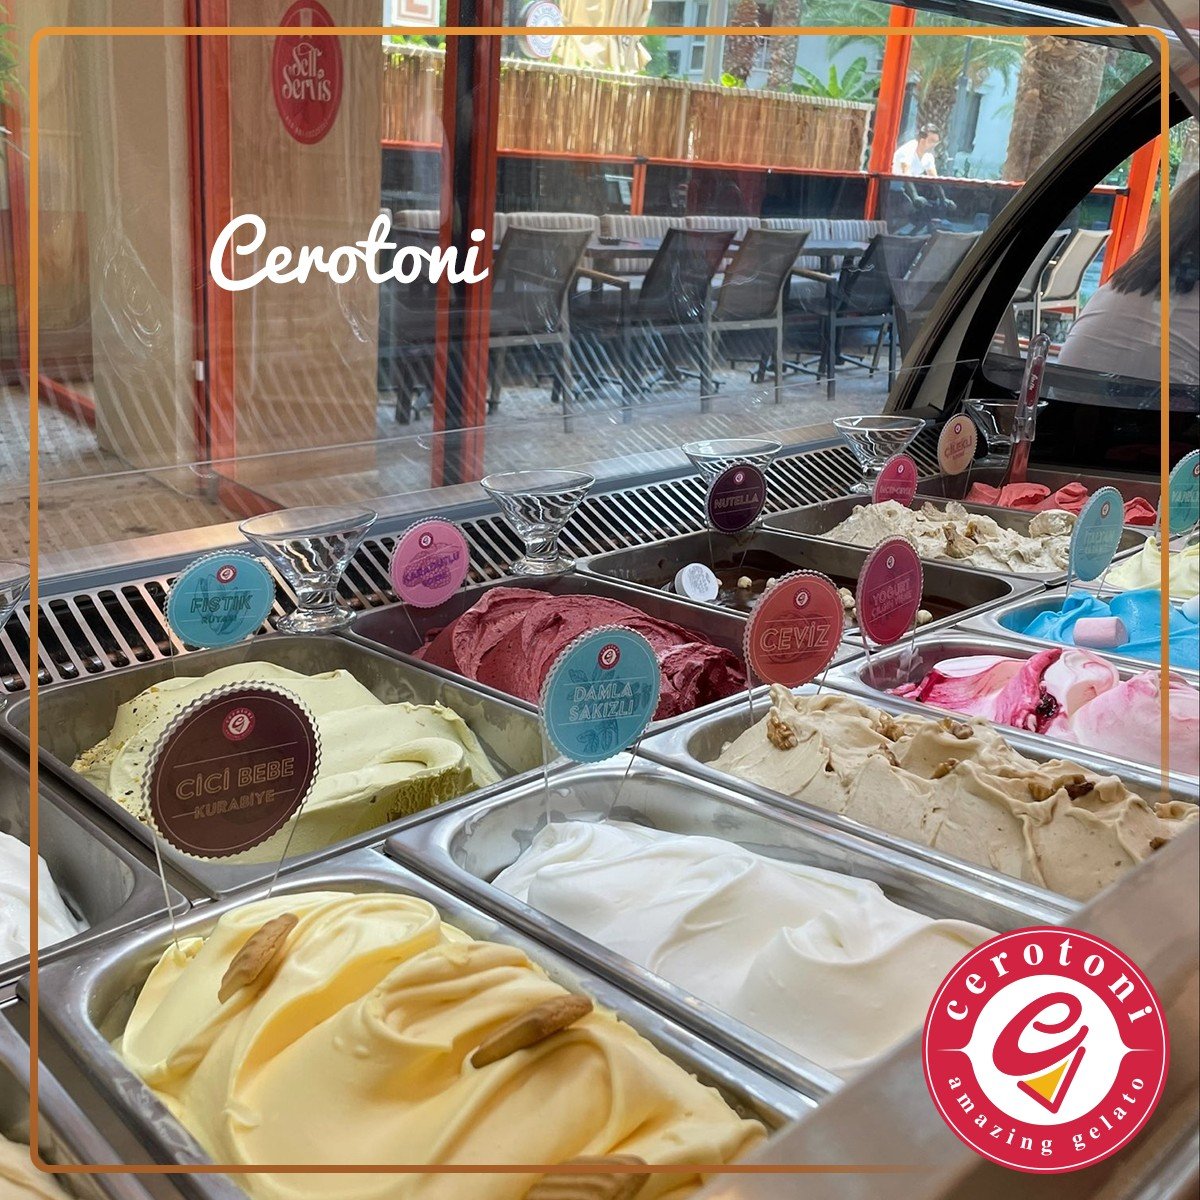 İtalya'da doğan ve dünyaca ünlü bir dondurma hâline gelen gelato dondurma, Cerotoni ile Coffee 333 mağazalarında içinde sizleri bekliyor. 📷

#cerotonigelato #gelato #dondurma #sorbe #kuşadası #bostanlı #cerotoni #nazilli #gelatolovers #dondurmakeyfi #dondurmadükkanı #icecream